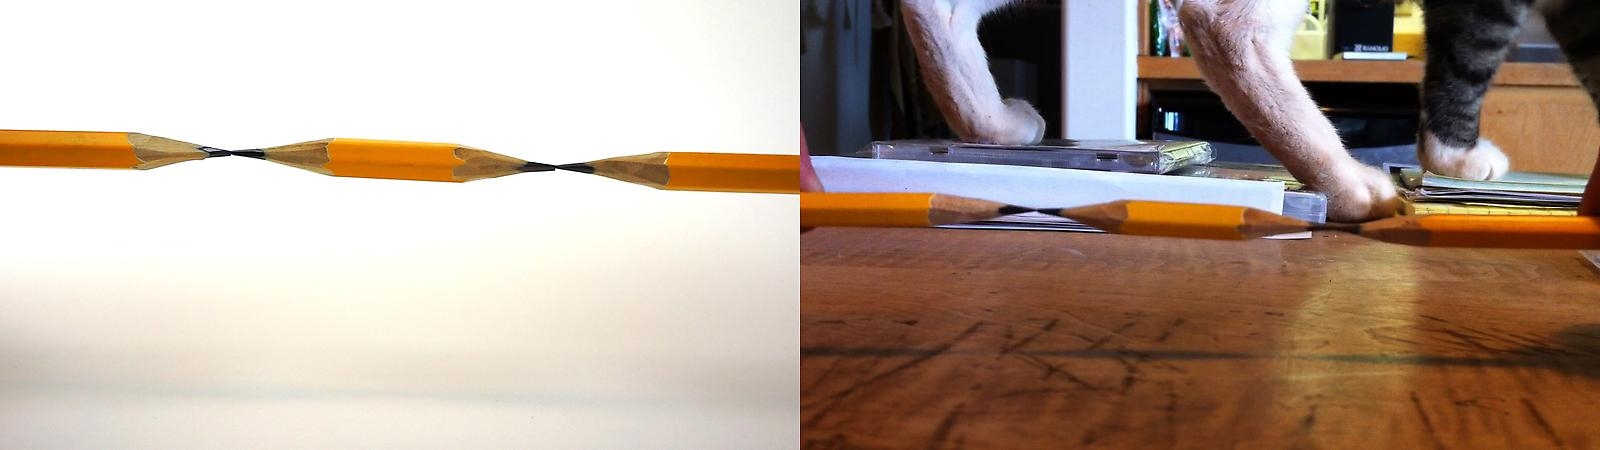 Bruce Nauman Pencil Lift/Mr. Rogers, 2013